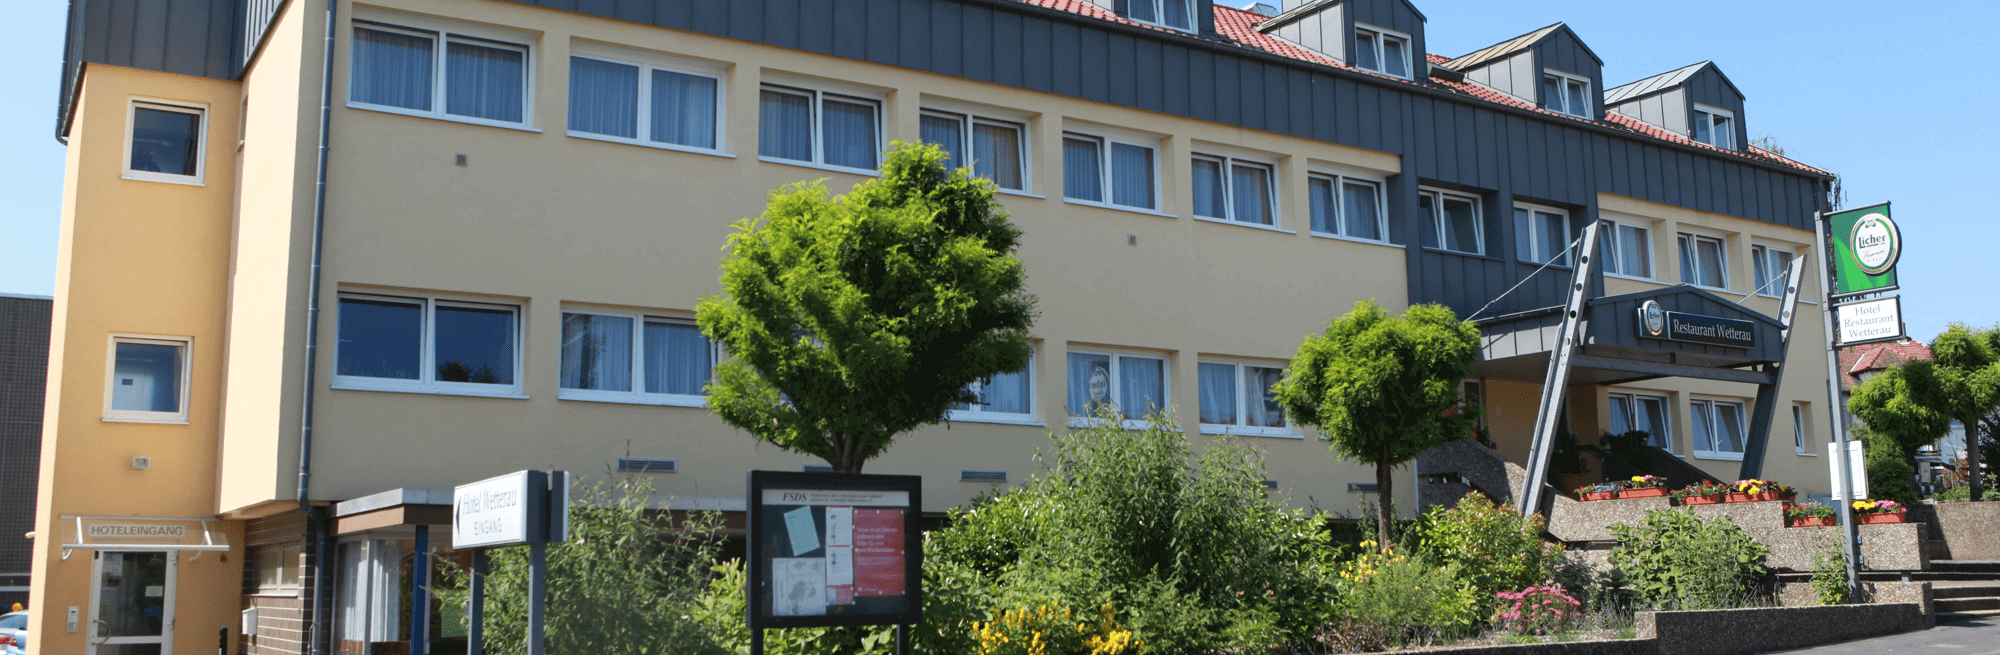 Hotel & Restaurant Wetterau in Wölfersheim bei Butzbach